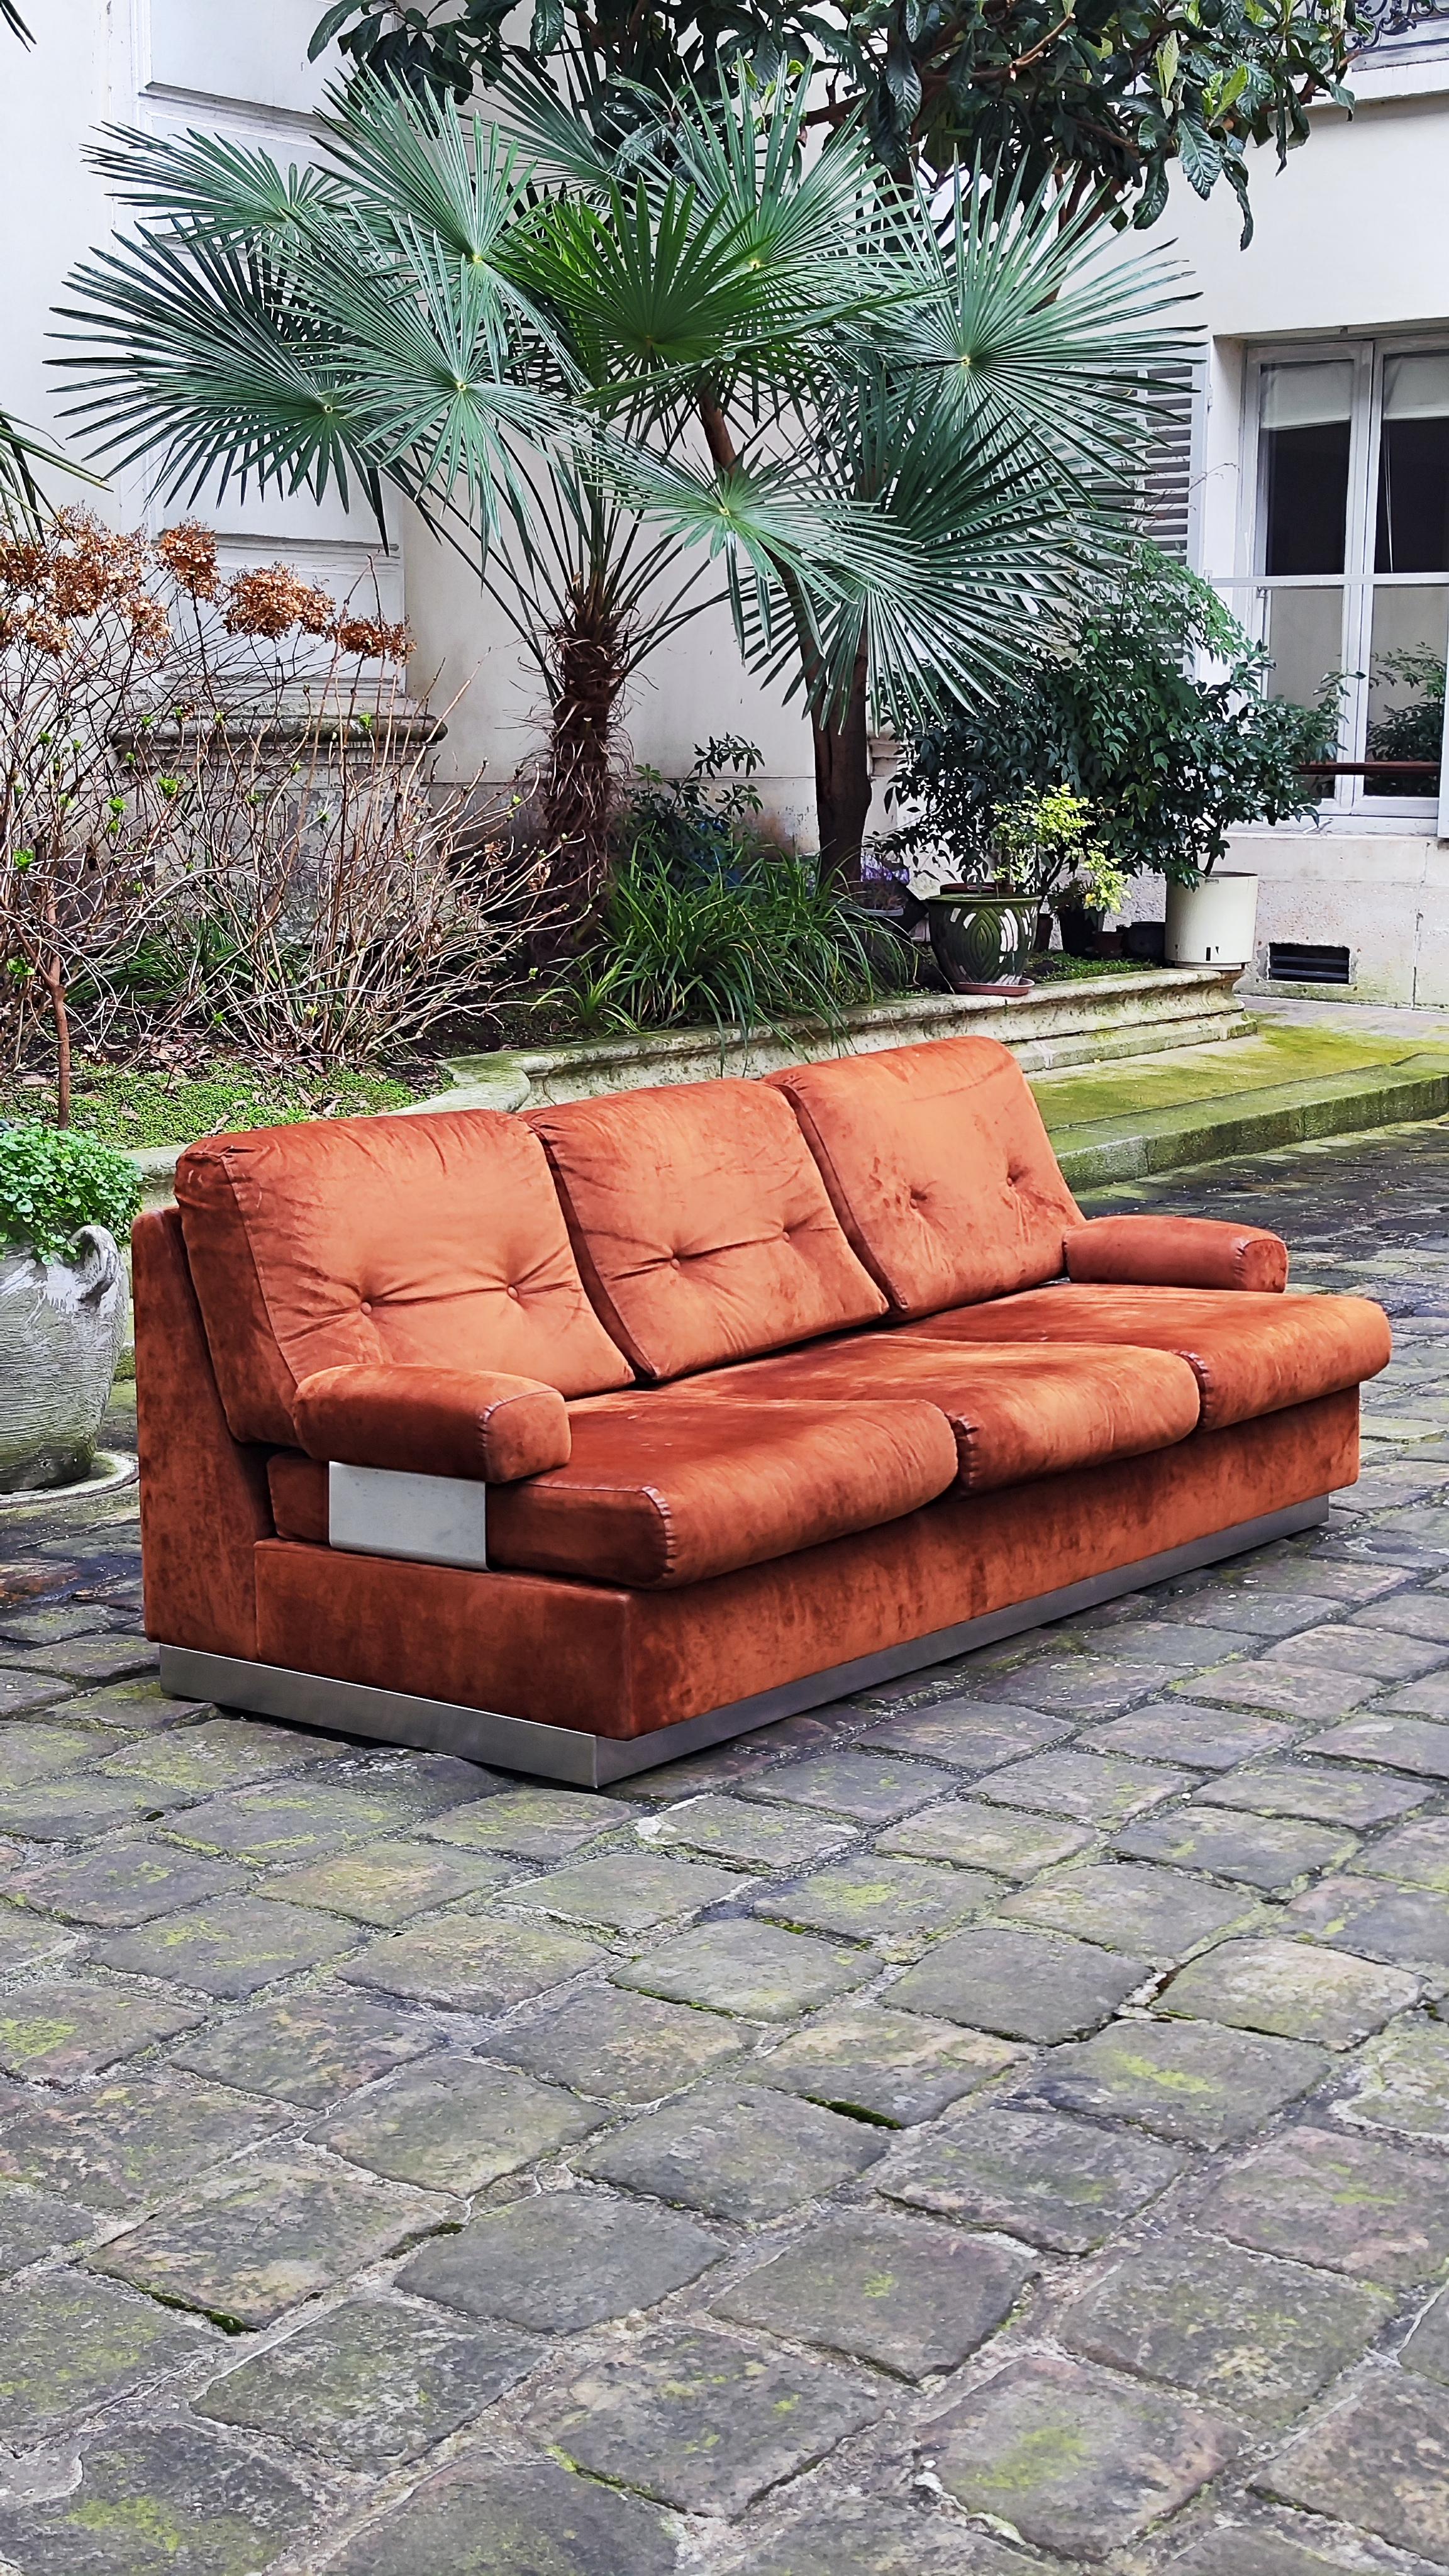 Jacques Charpentier zugeschriebenes Sofa aus hellbraunem Wildleder.

Er besteht aus einem Sockel aus gebürstetem Stahl, einer Struktur und 6 Kissen, die mit einem hellbraunen Wildlederstoff bezogen sind.
Zwei Armlehnen mit Stützen aus gebürstetem